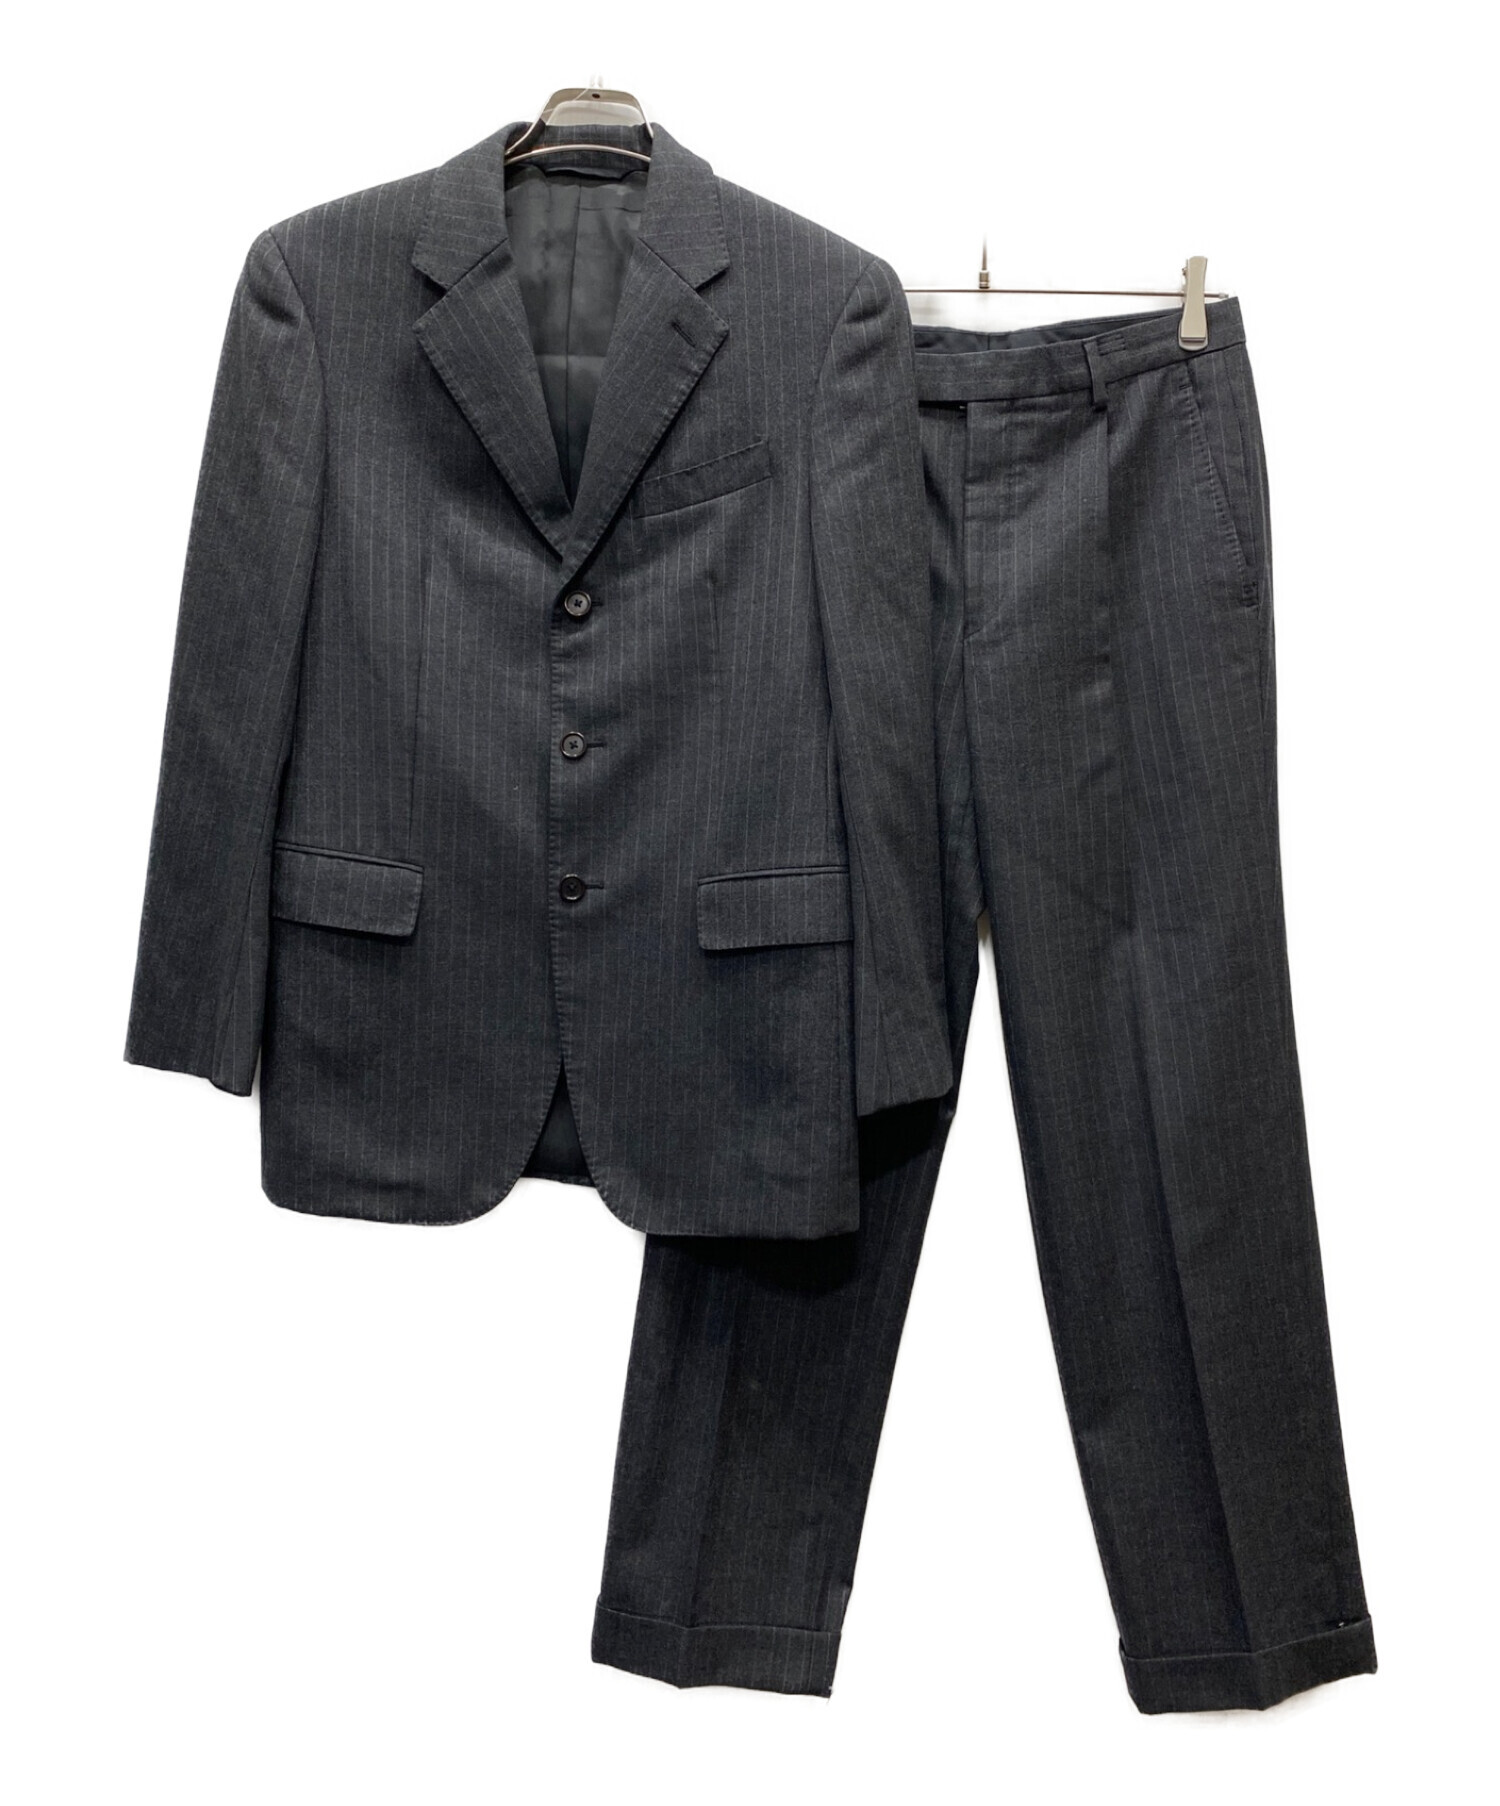 DKNY (ダナキャランニューヨーク) 3Bスーツ グレー サイズ:38